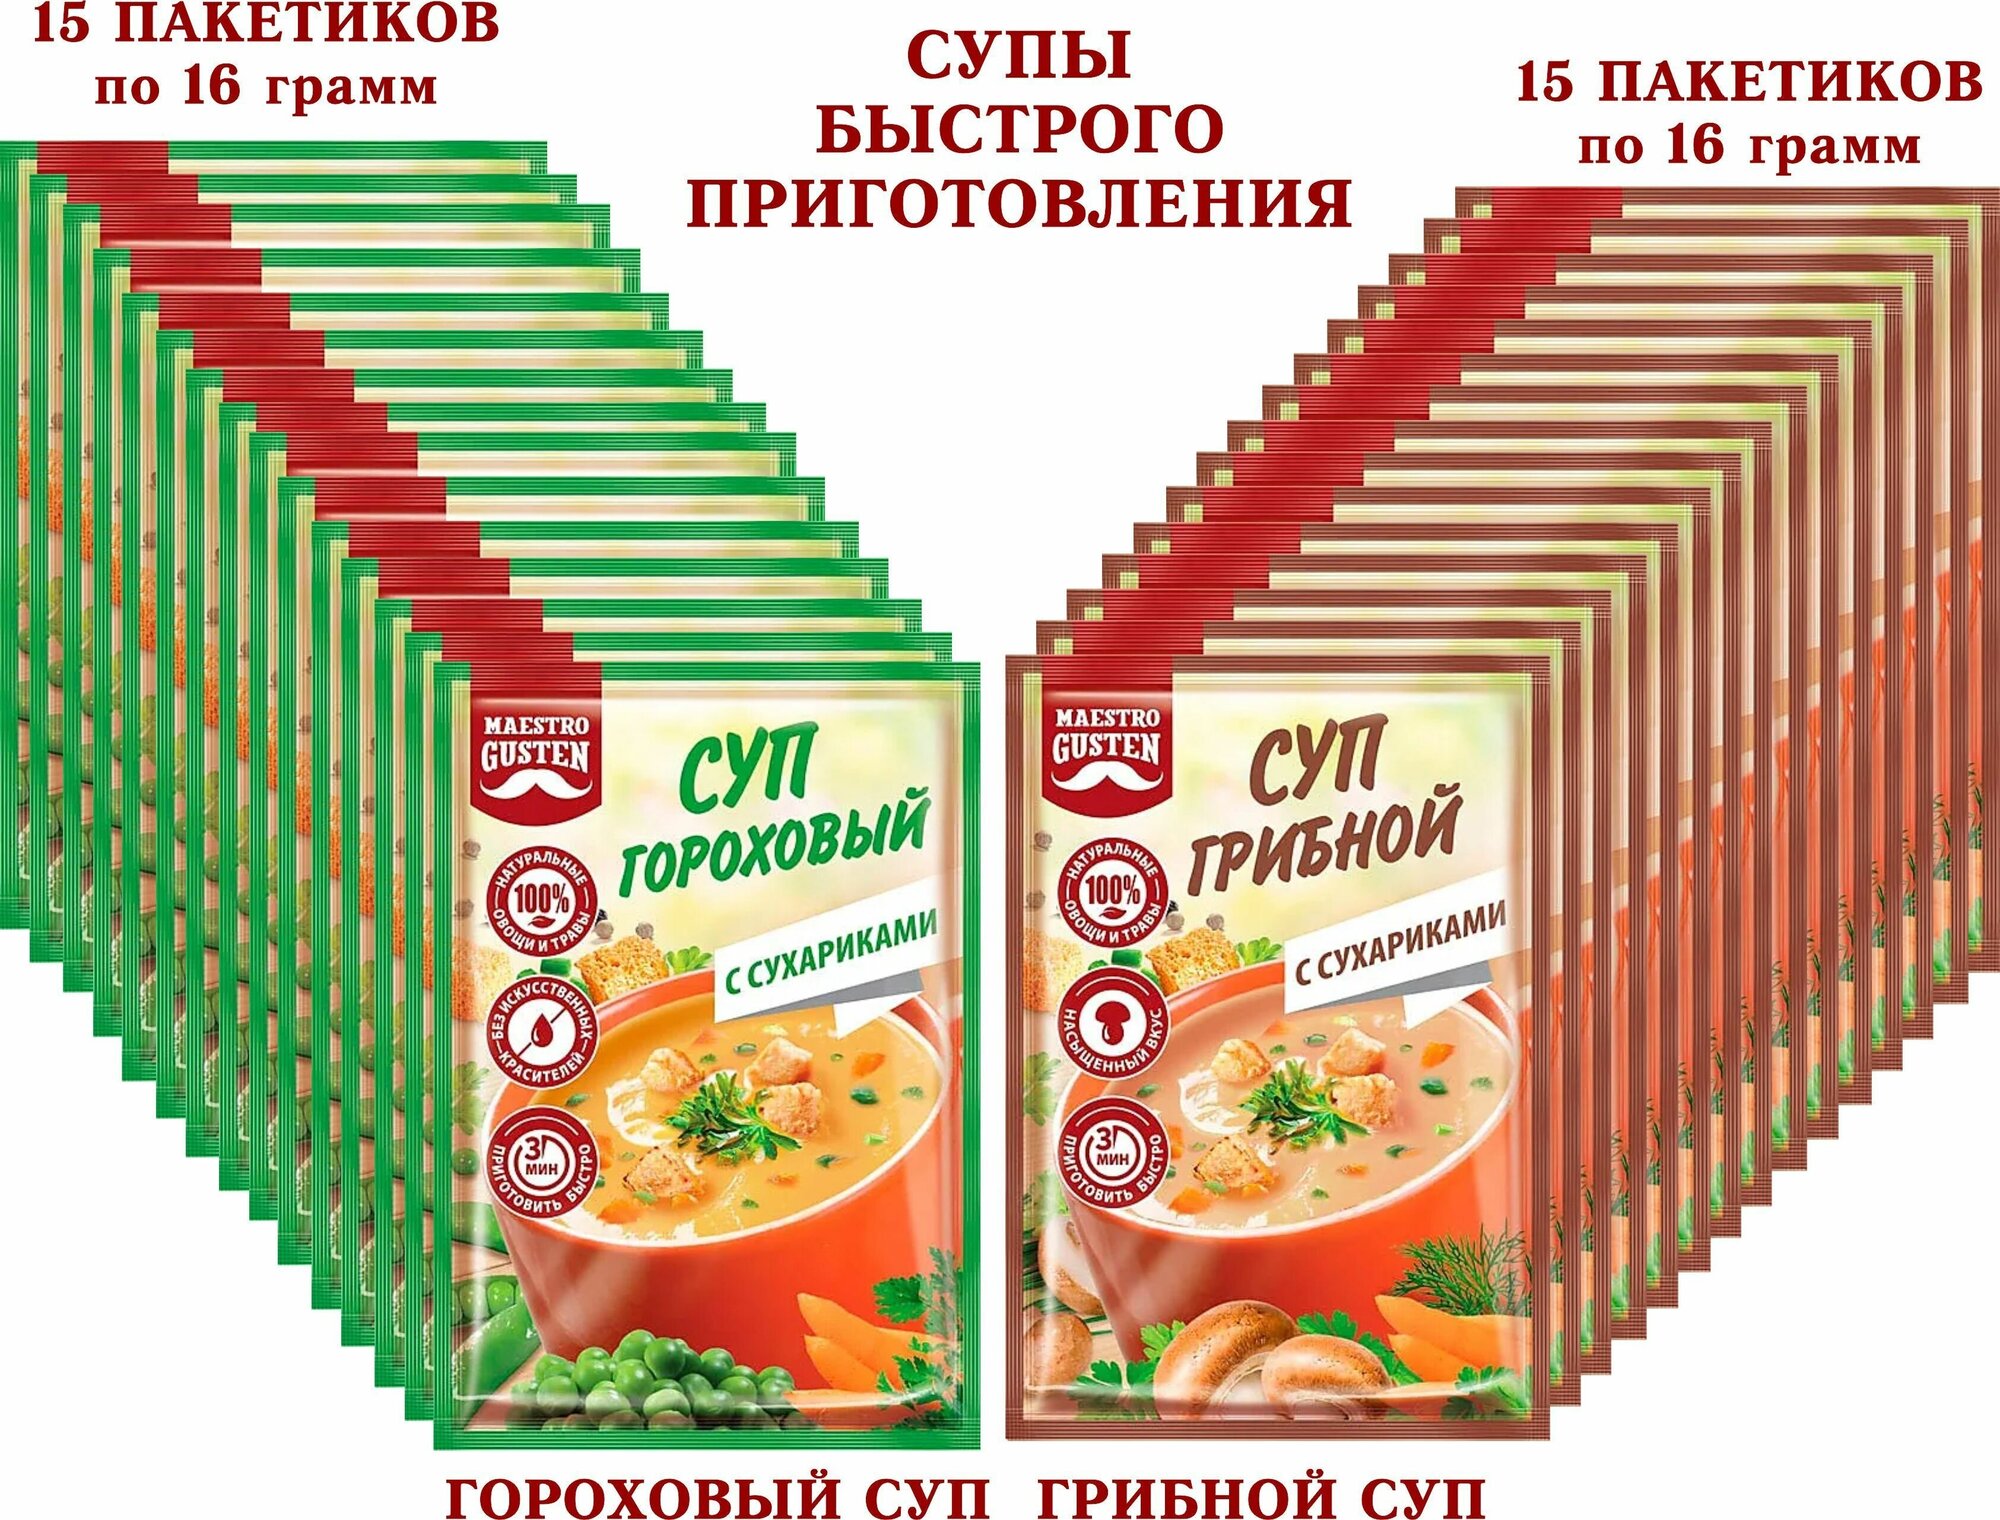 Суп моментального приготовления "Maestro Gusten" микс гороховый с сухариками/грибной с сухариками, KDV - 30 пакетиков по 16 грамм